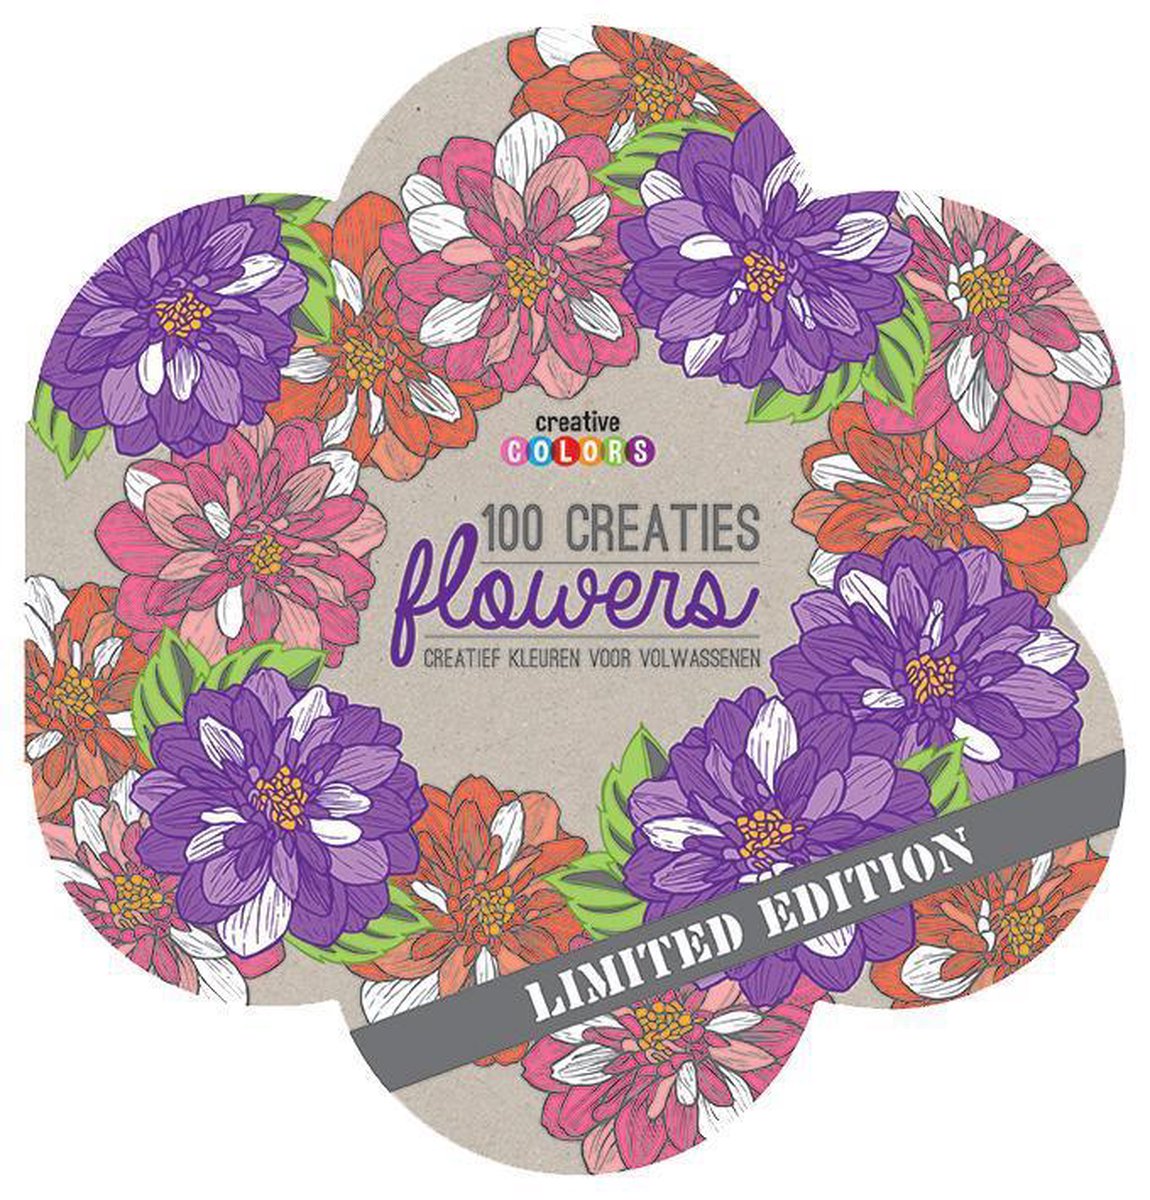 100 creaties flowers, kleuren voor volwassenen / Creative colors